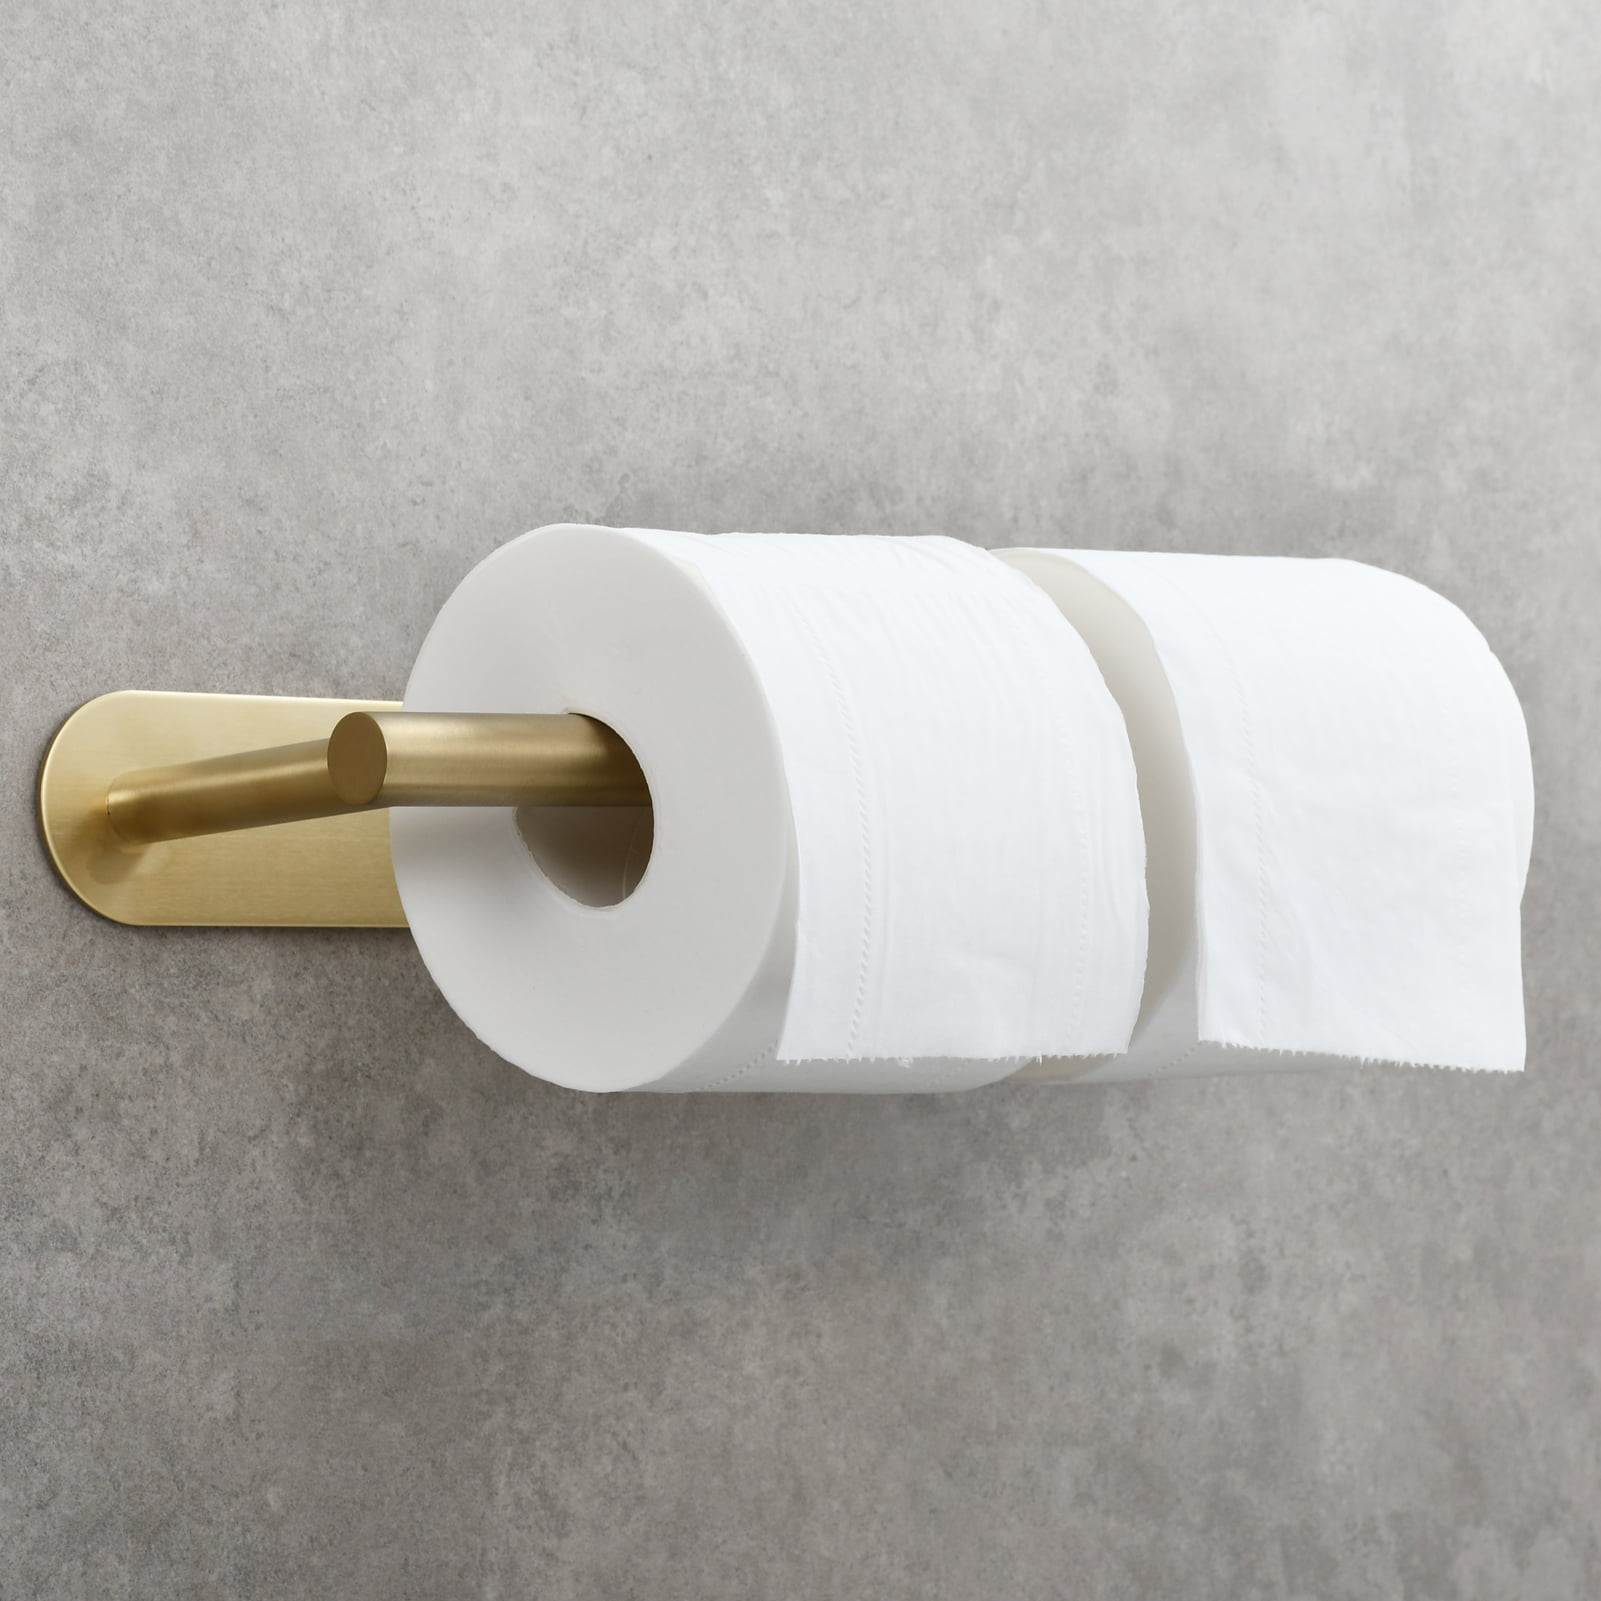 Details about   Brass Black+Gold Bathroom Paper Holder Towel Ring Bar Robe Hook Rack Towel Rack 